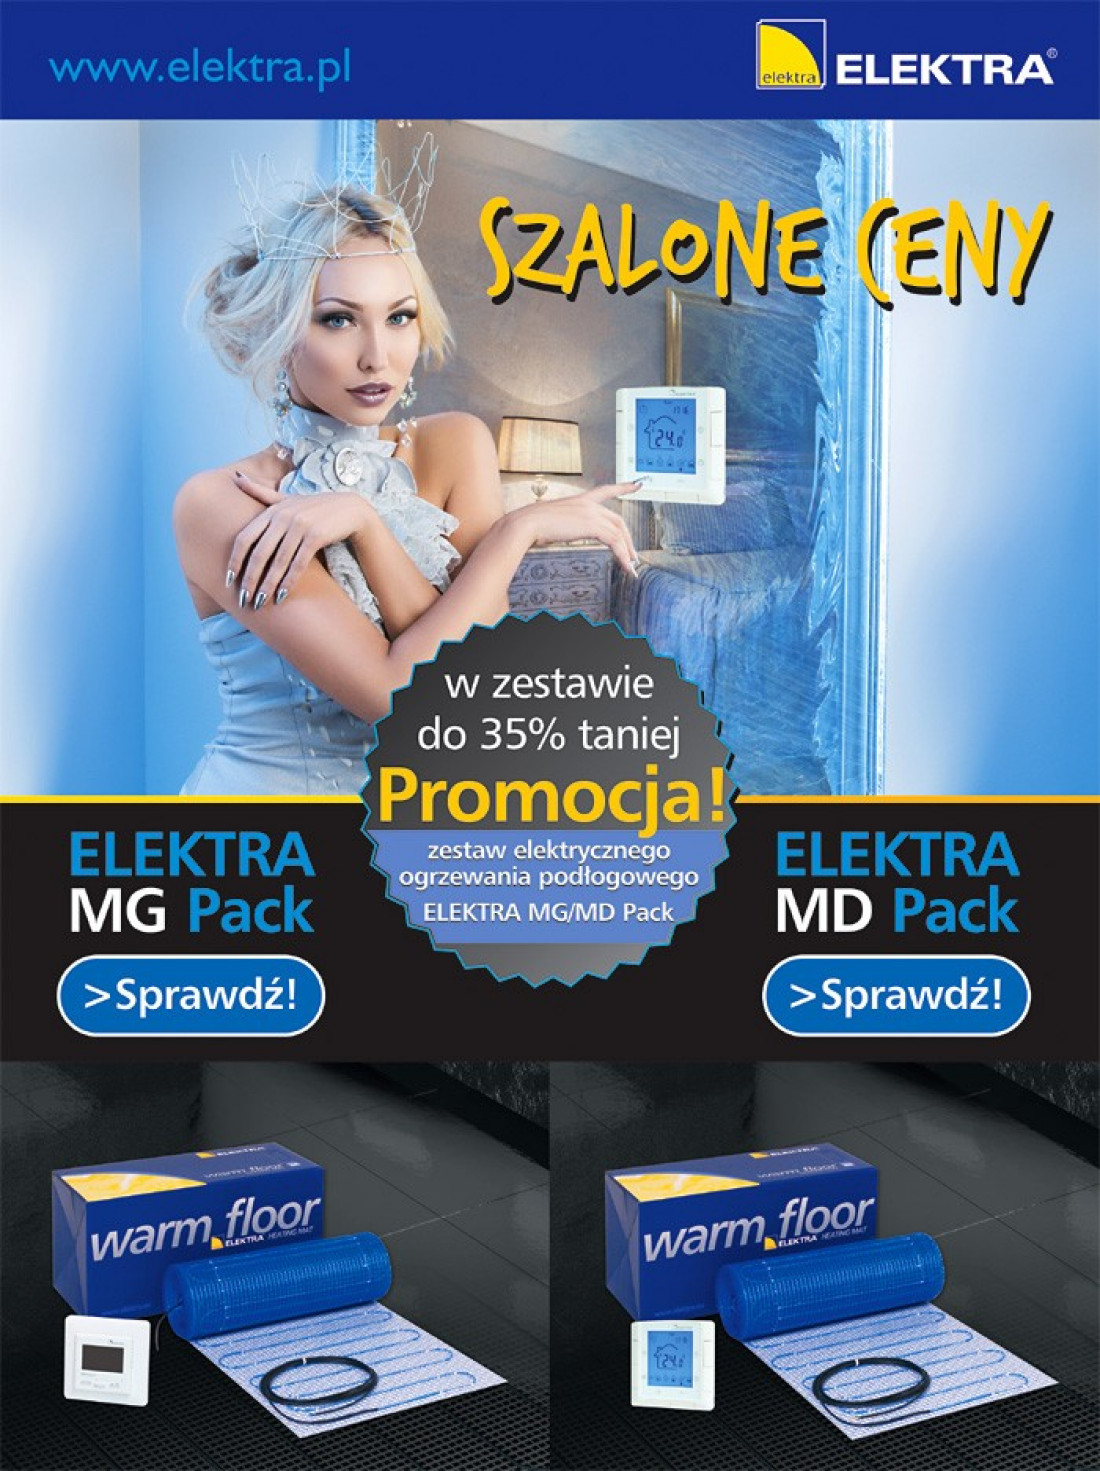 Promocja pakietowa ELEKTRA MG/MD Pack